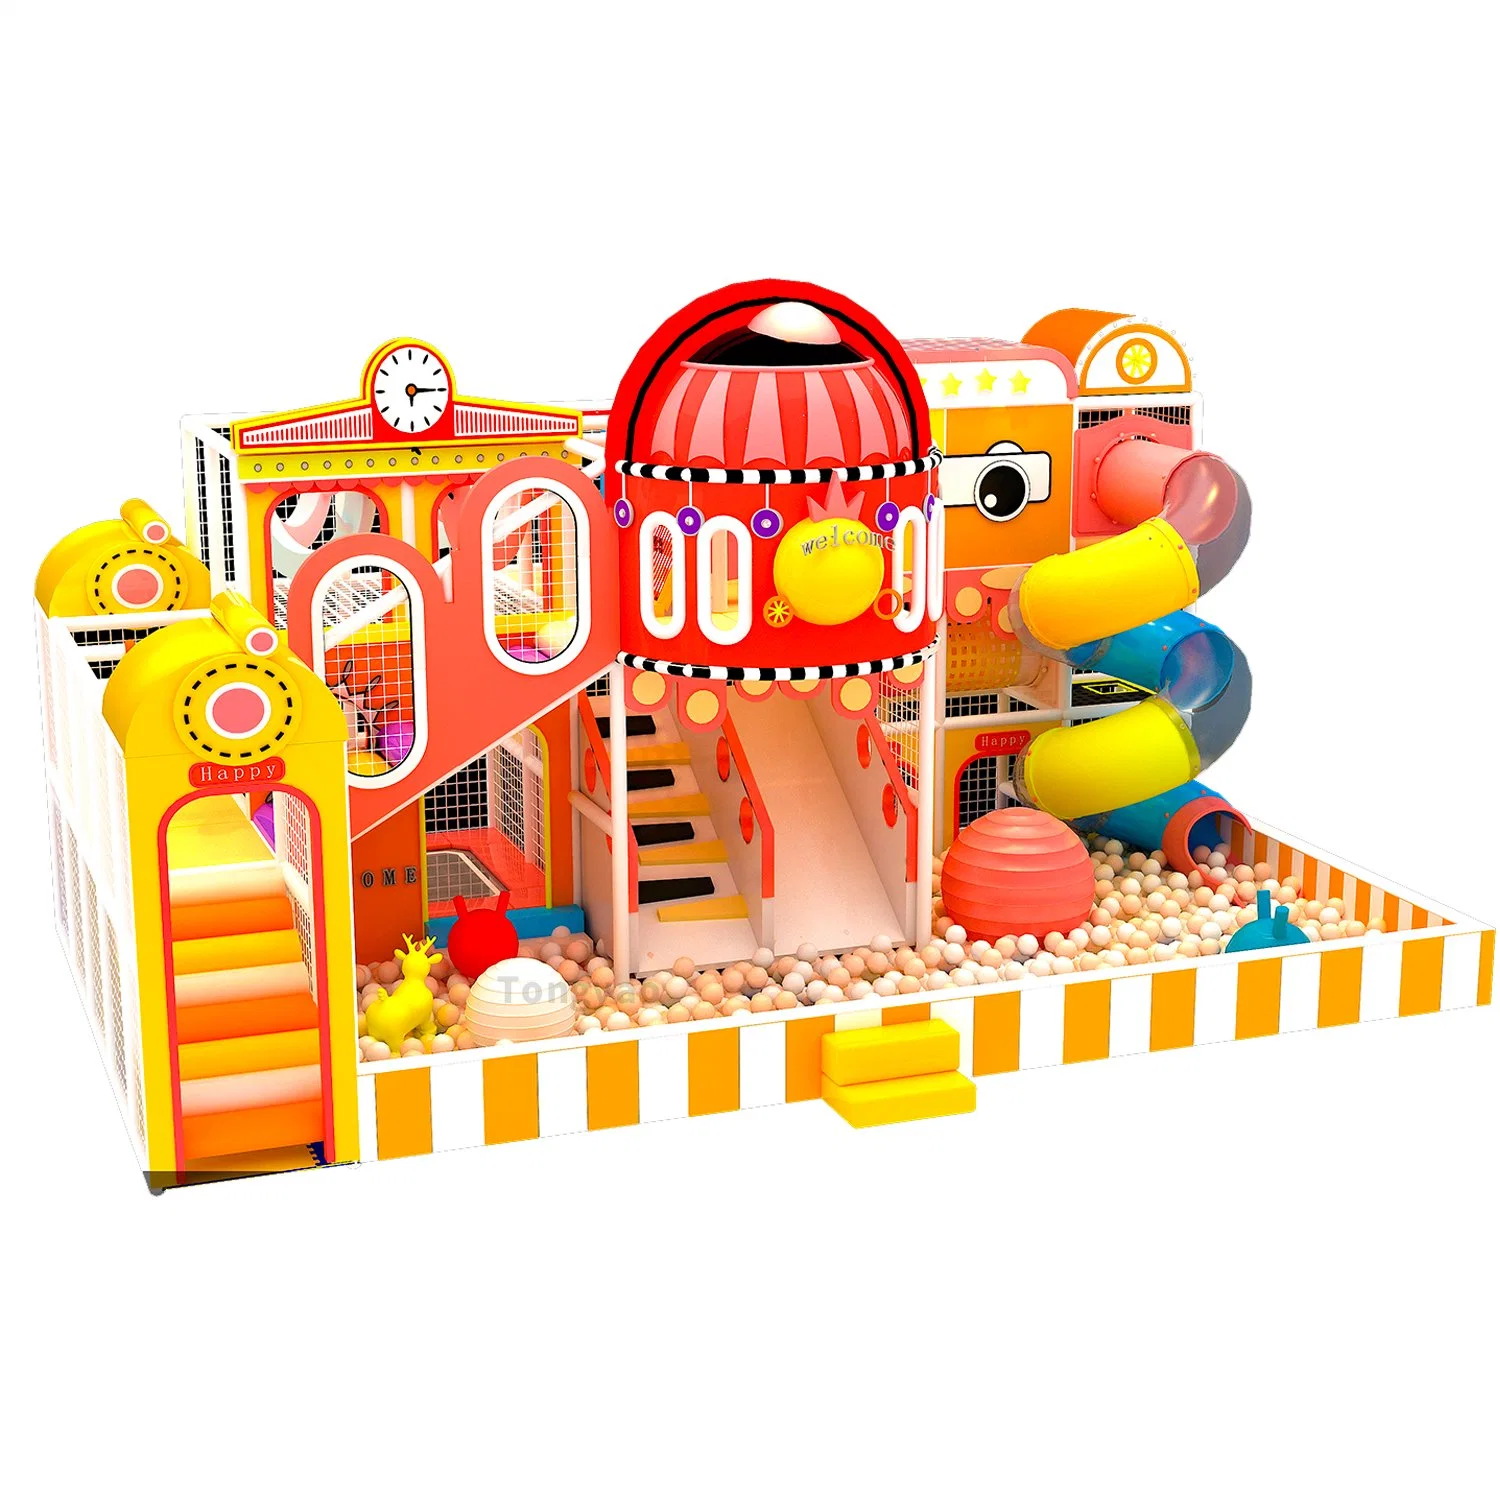 Детская игровая площадка для игры в мягком режиме Pit Trampoline Slide для игры в зале (10*6*5)